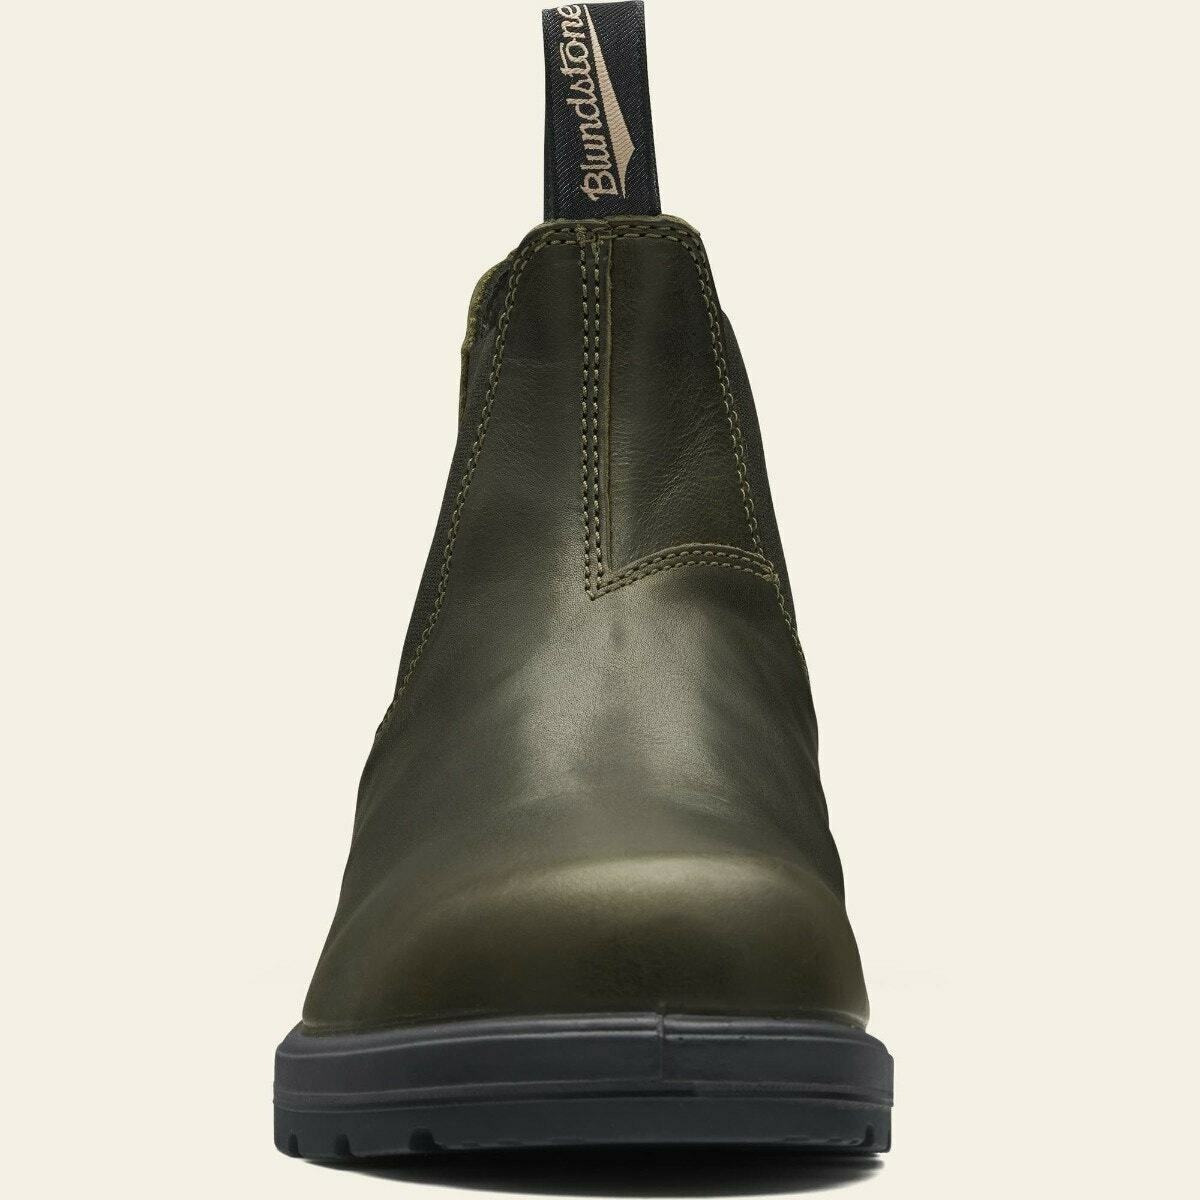 Blundstone Classic Schuhe 2052 Dark Green Chelsea Boots Unisex Grün Stiefel